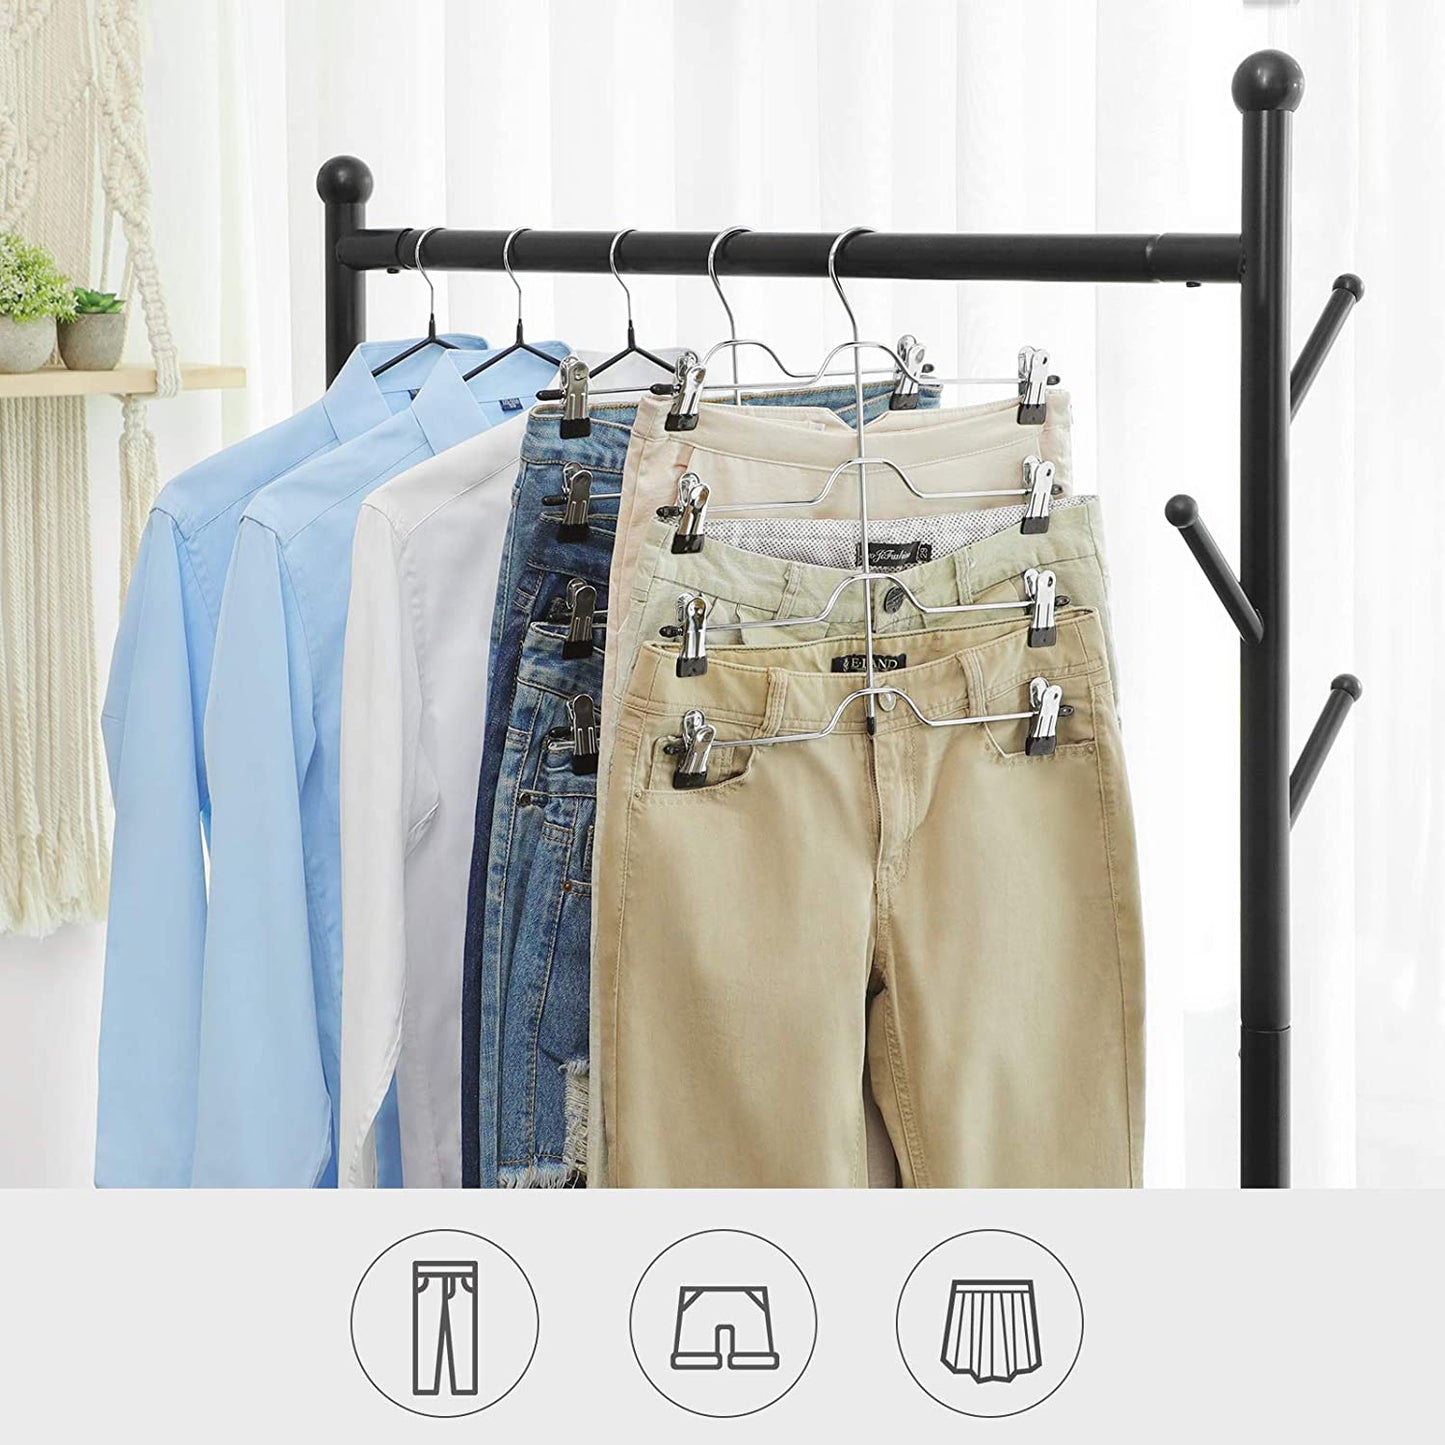 Nancy's trouser hanger 4 layers - Clothes hangers 3 pieces - Trouser bar